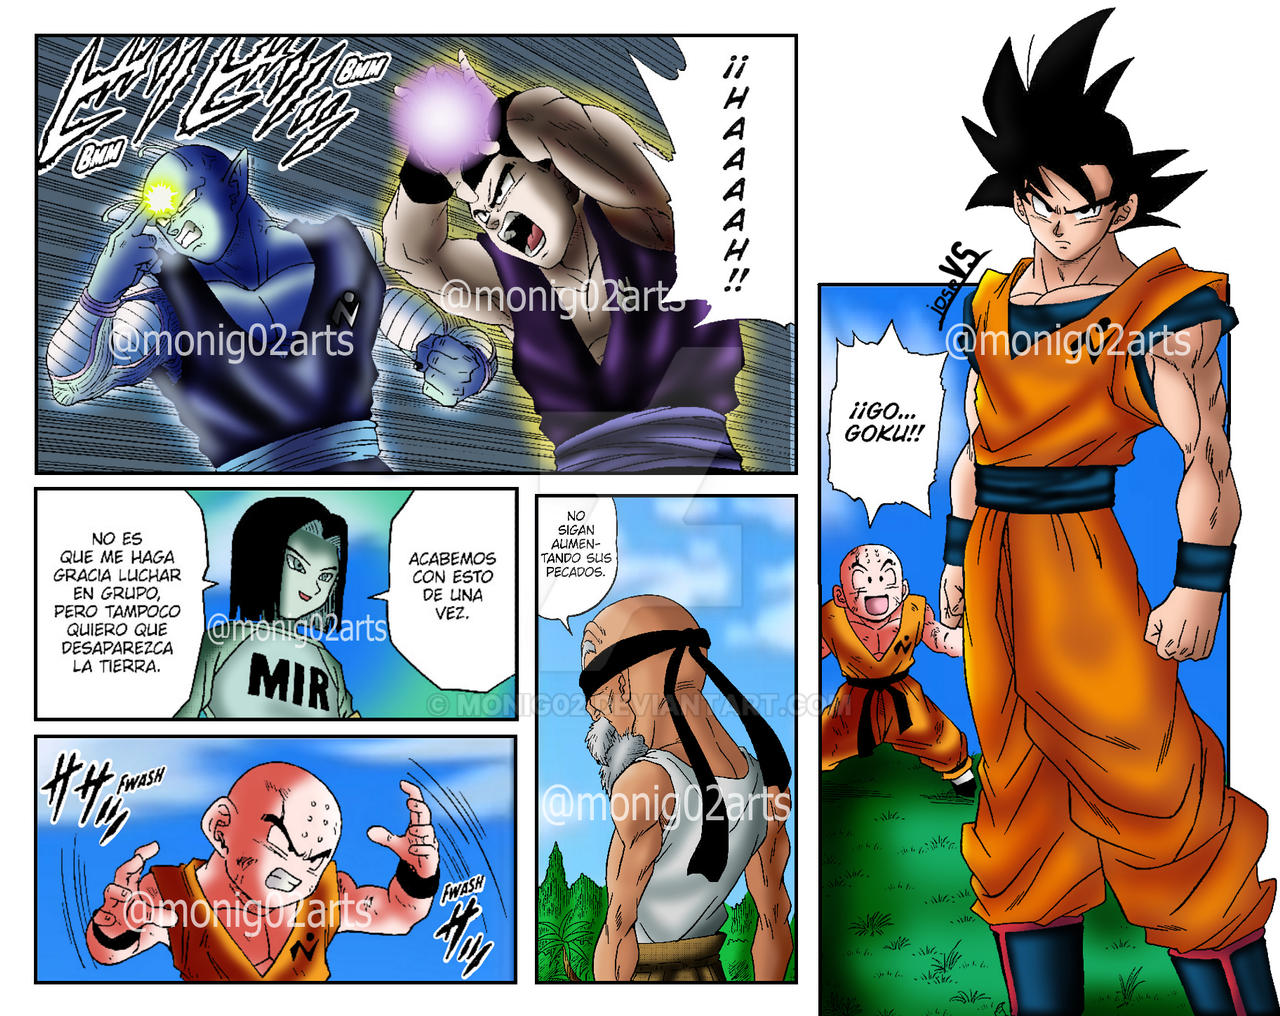 DBS manga 56 - 57 colored by MoniG02 by MoniG02 on DeviantArt